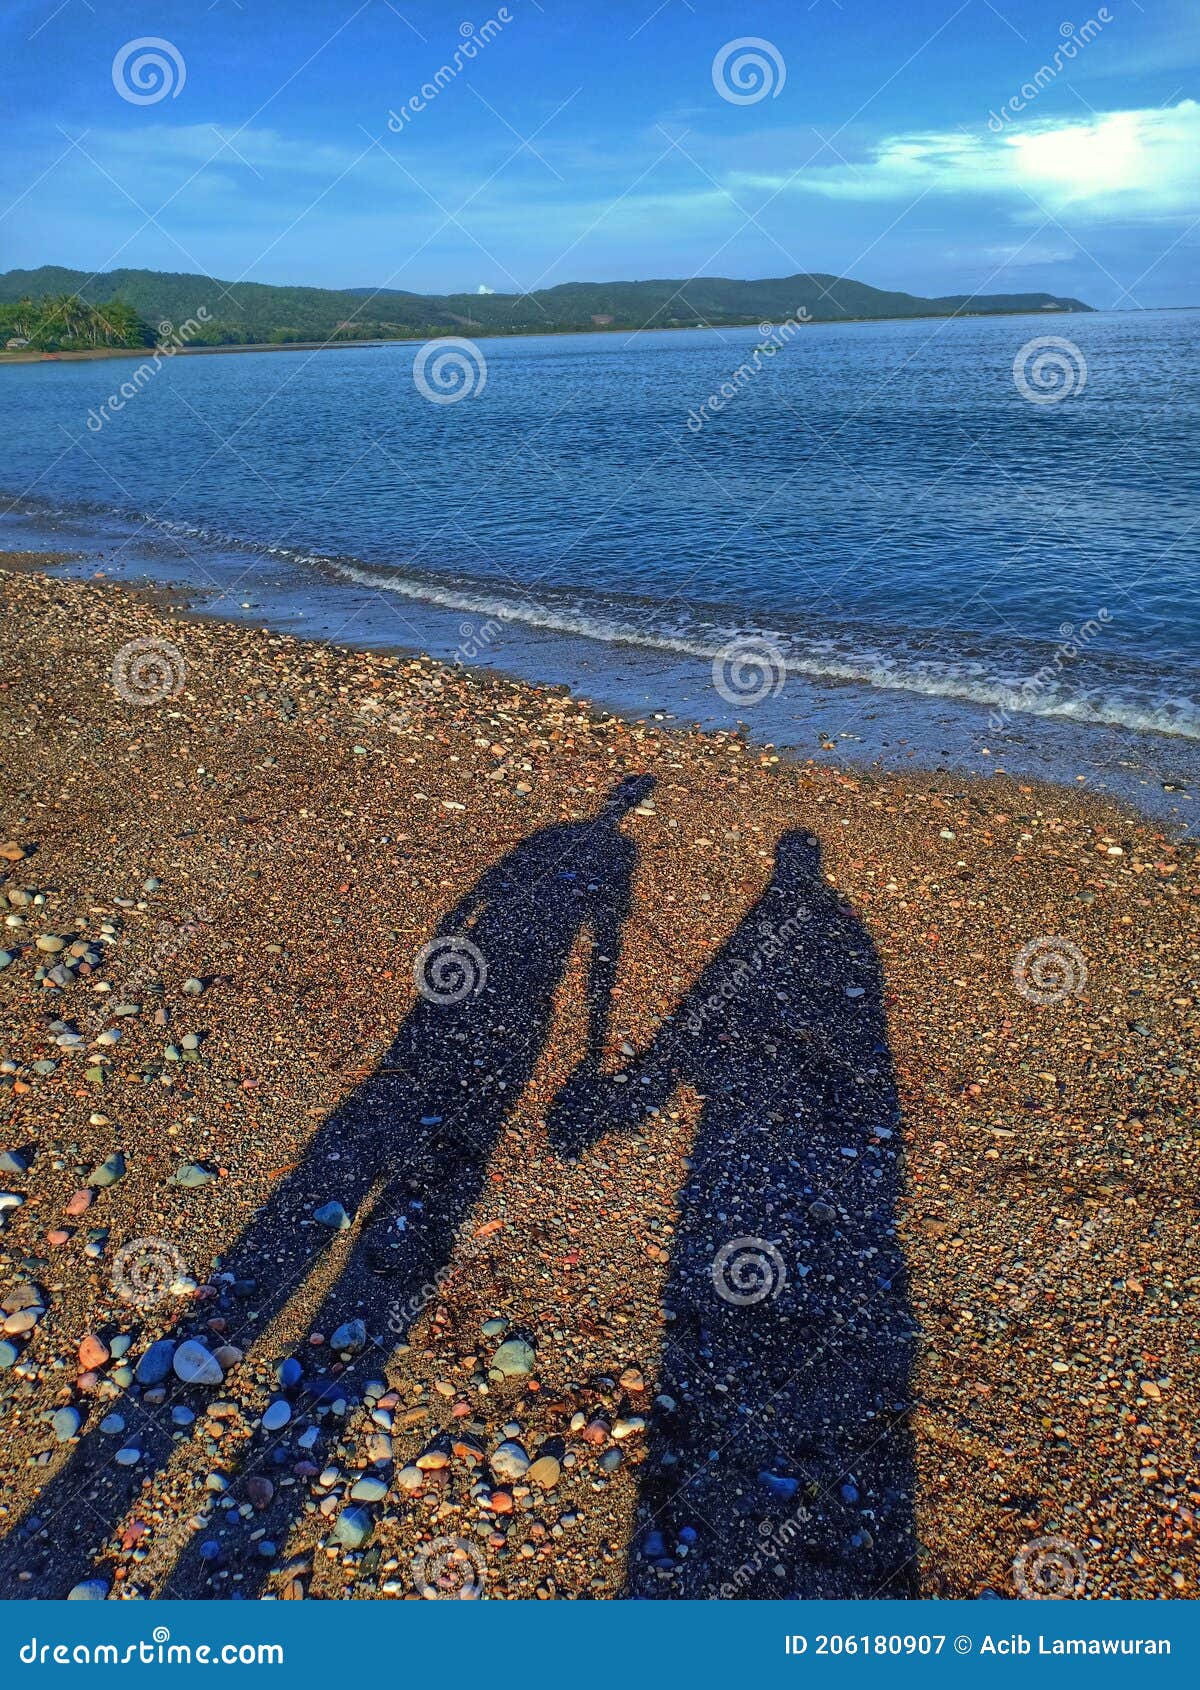 shadow by the beach pota with my wife